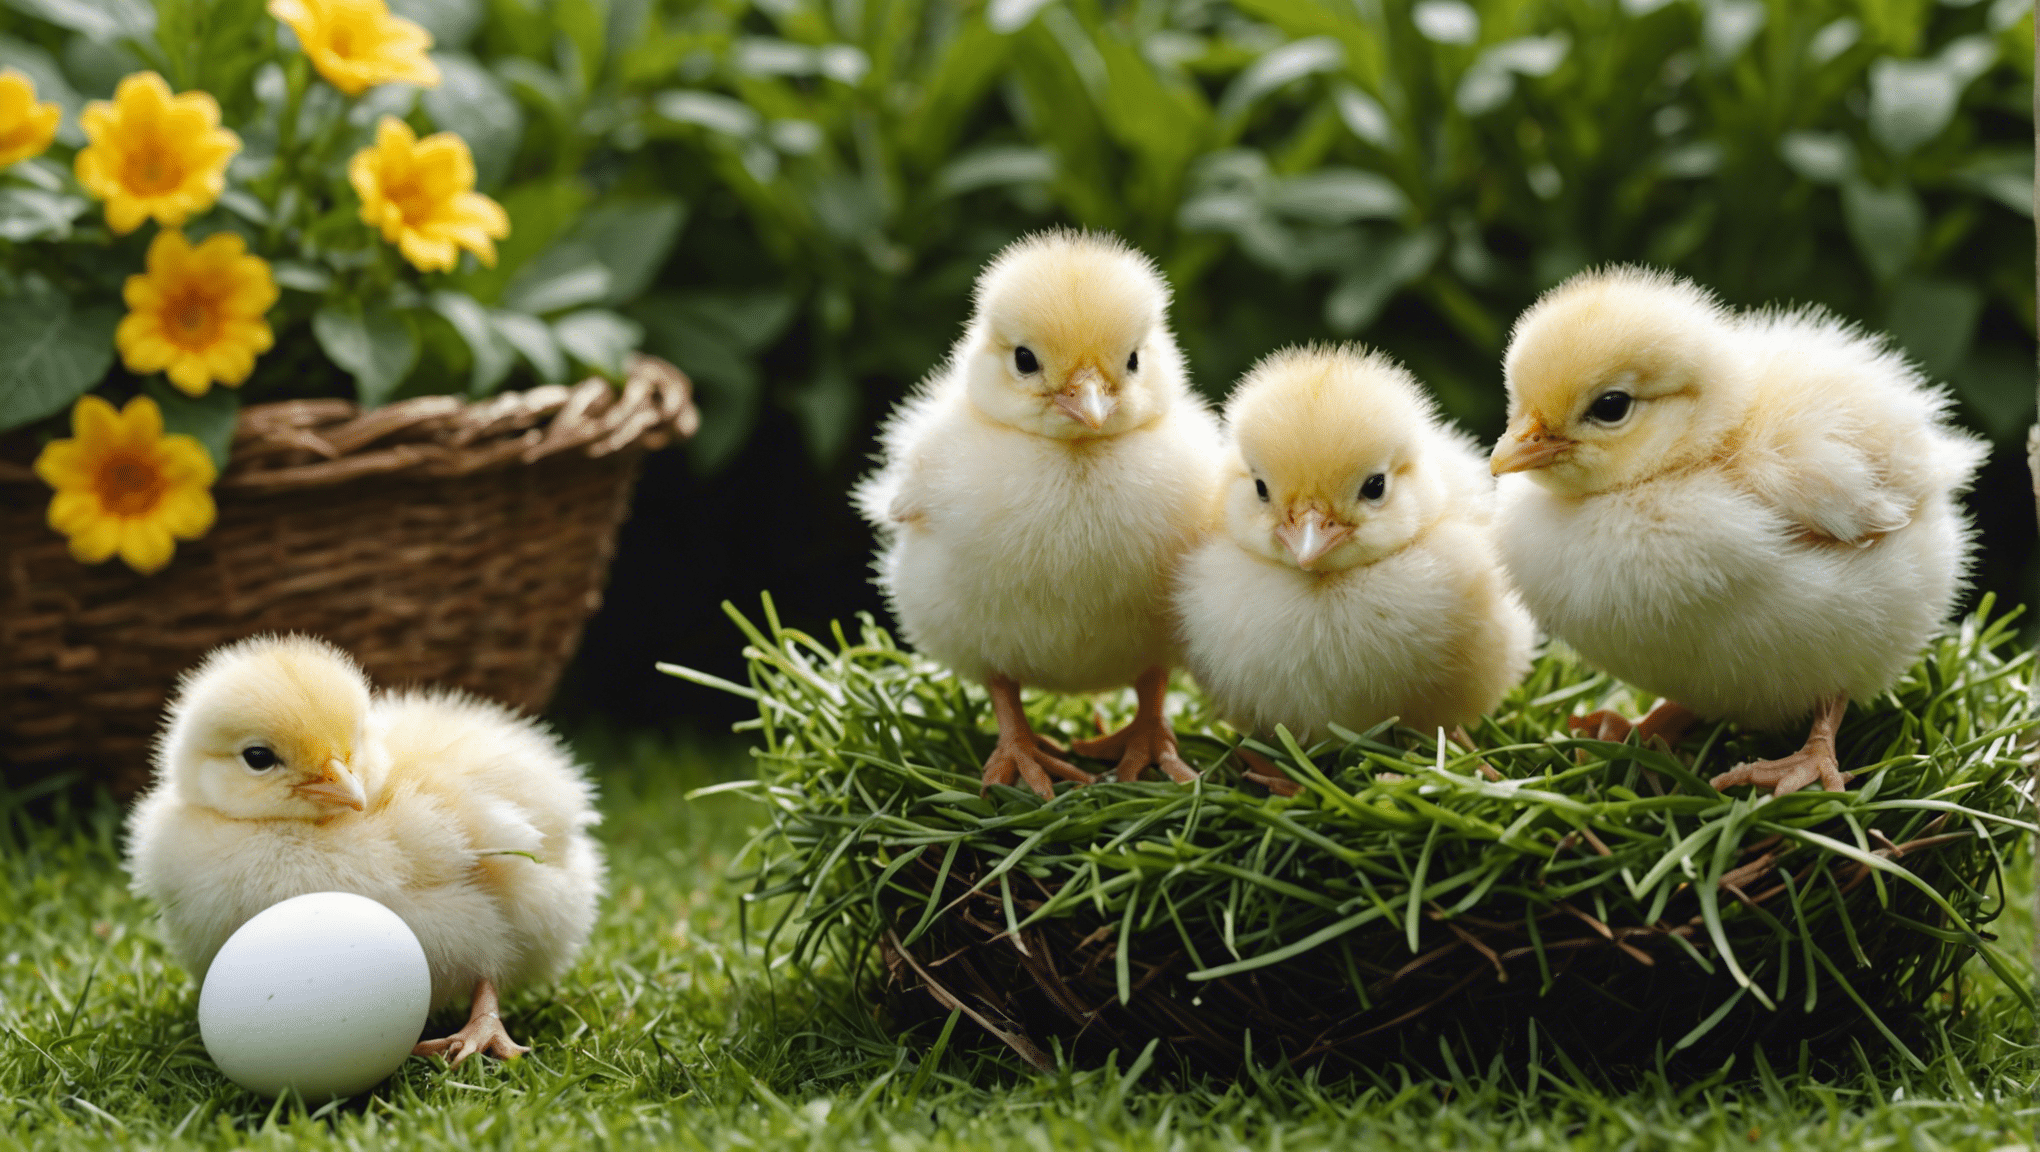 ひよこの孵化と世話に関する包括的なガイドで、卵からひよこを育てる方法を学びましょう。